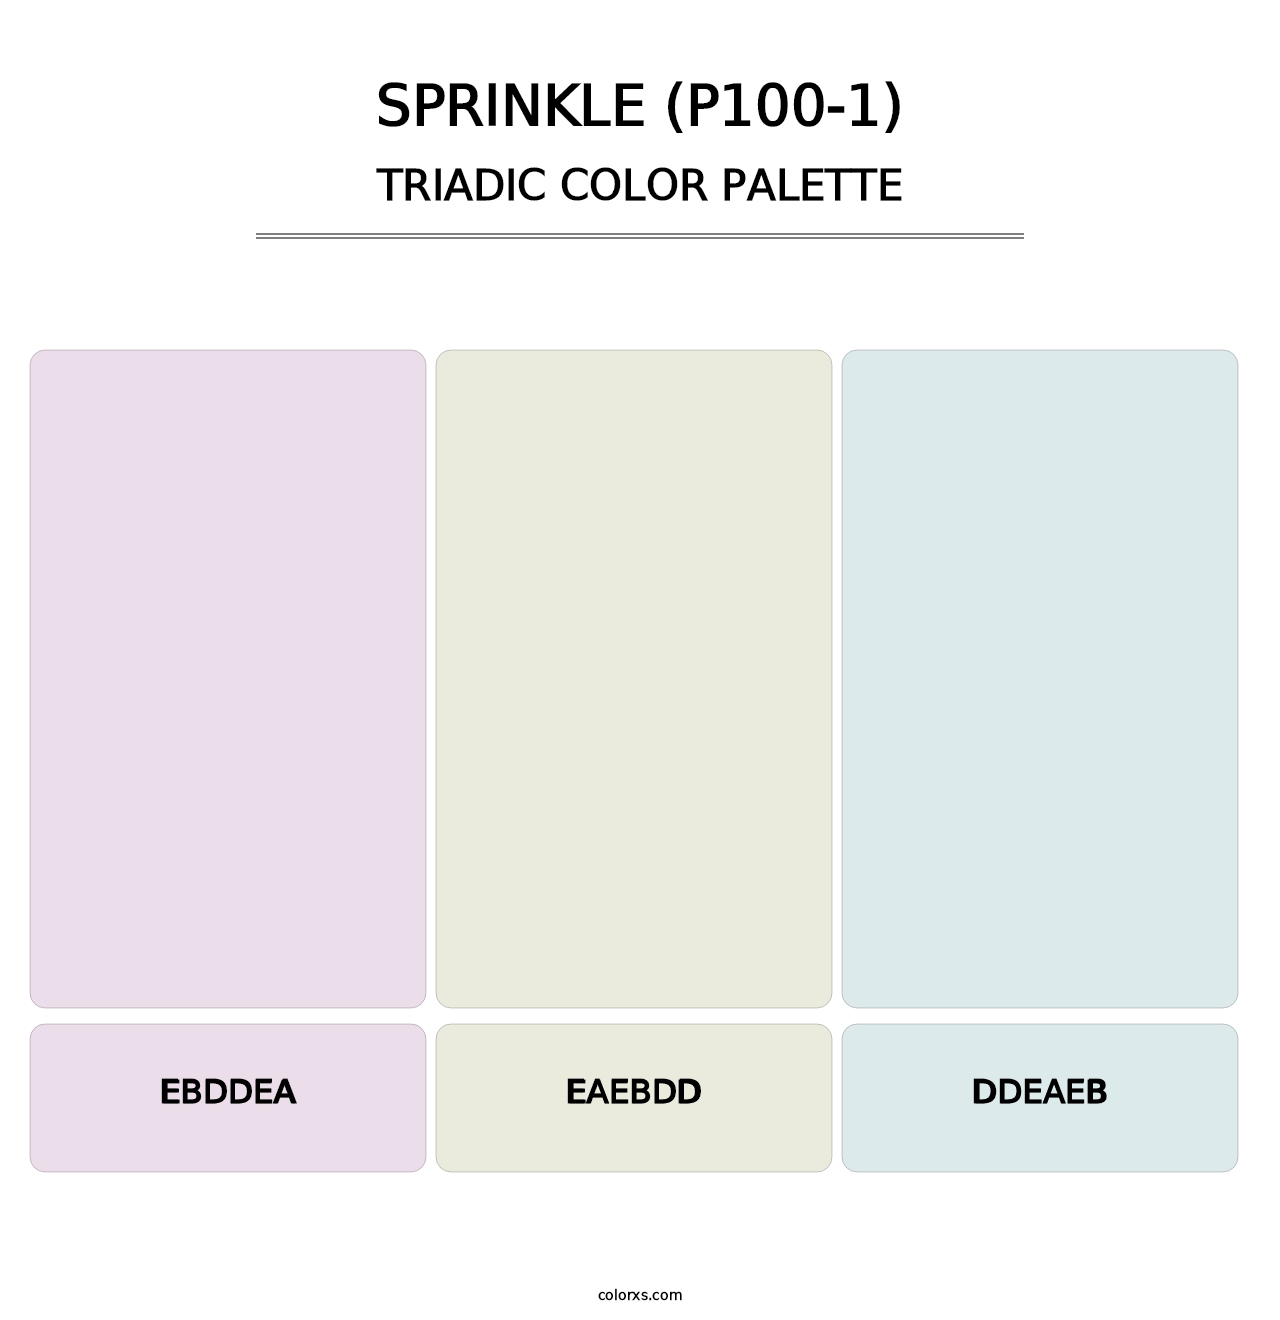 Sprinkle (P100-1) - Triadic Color Palette